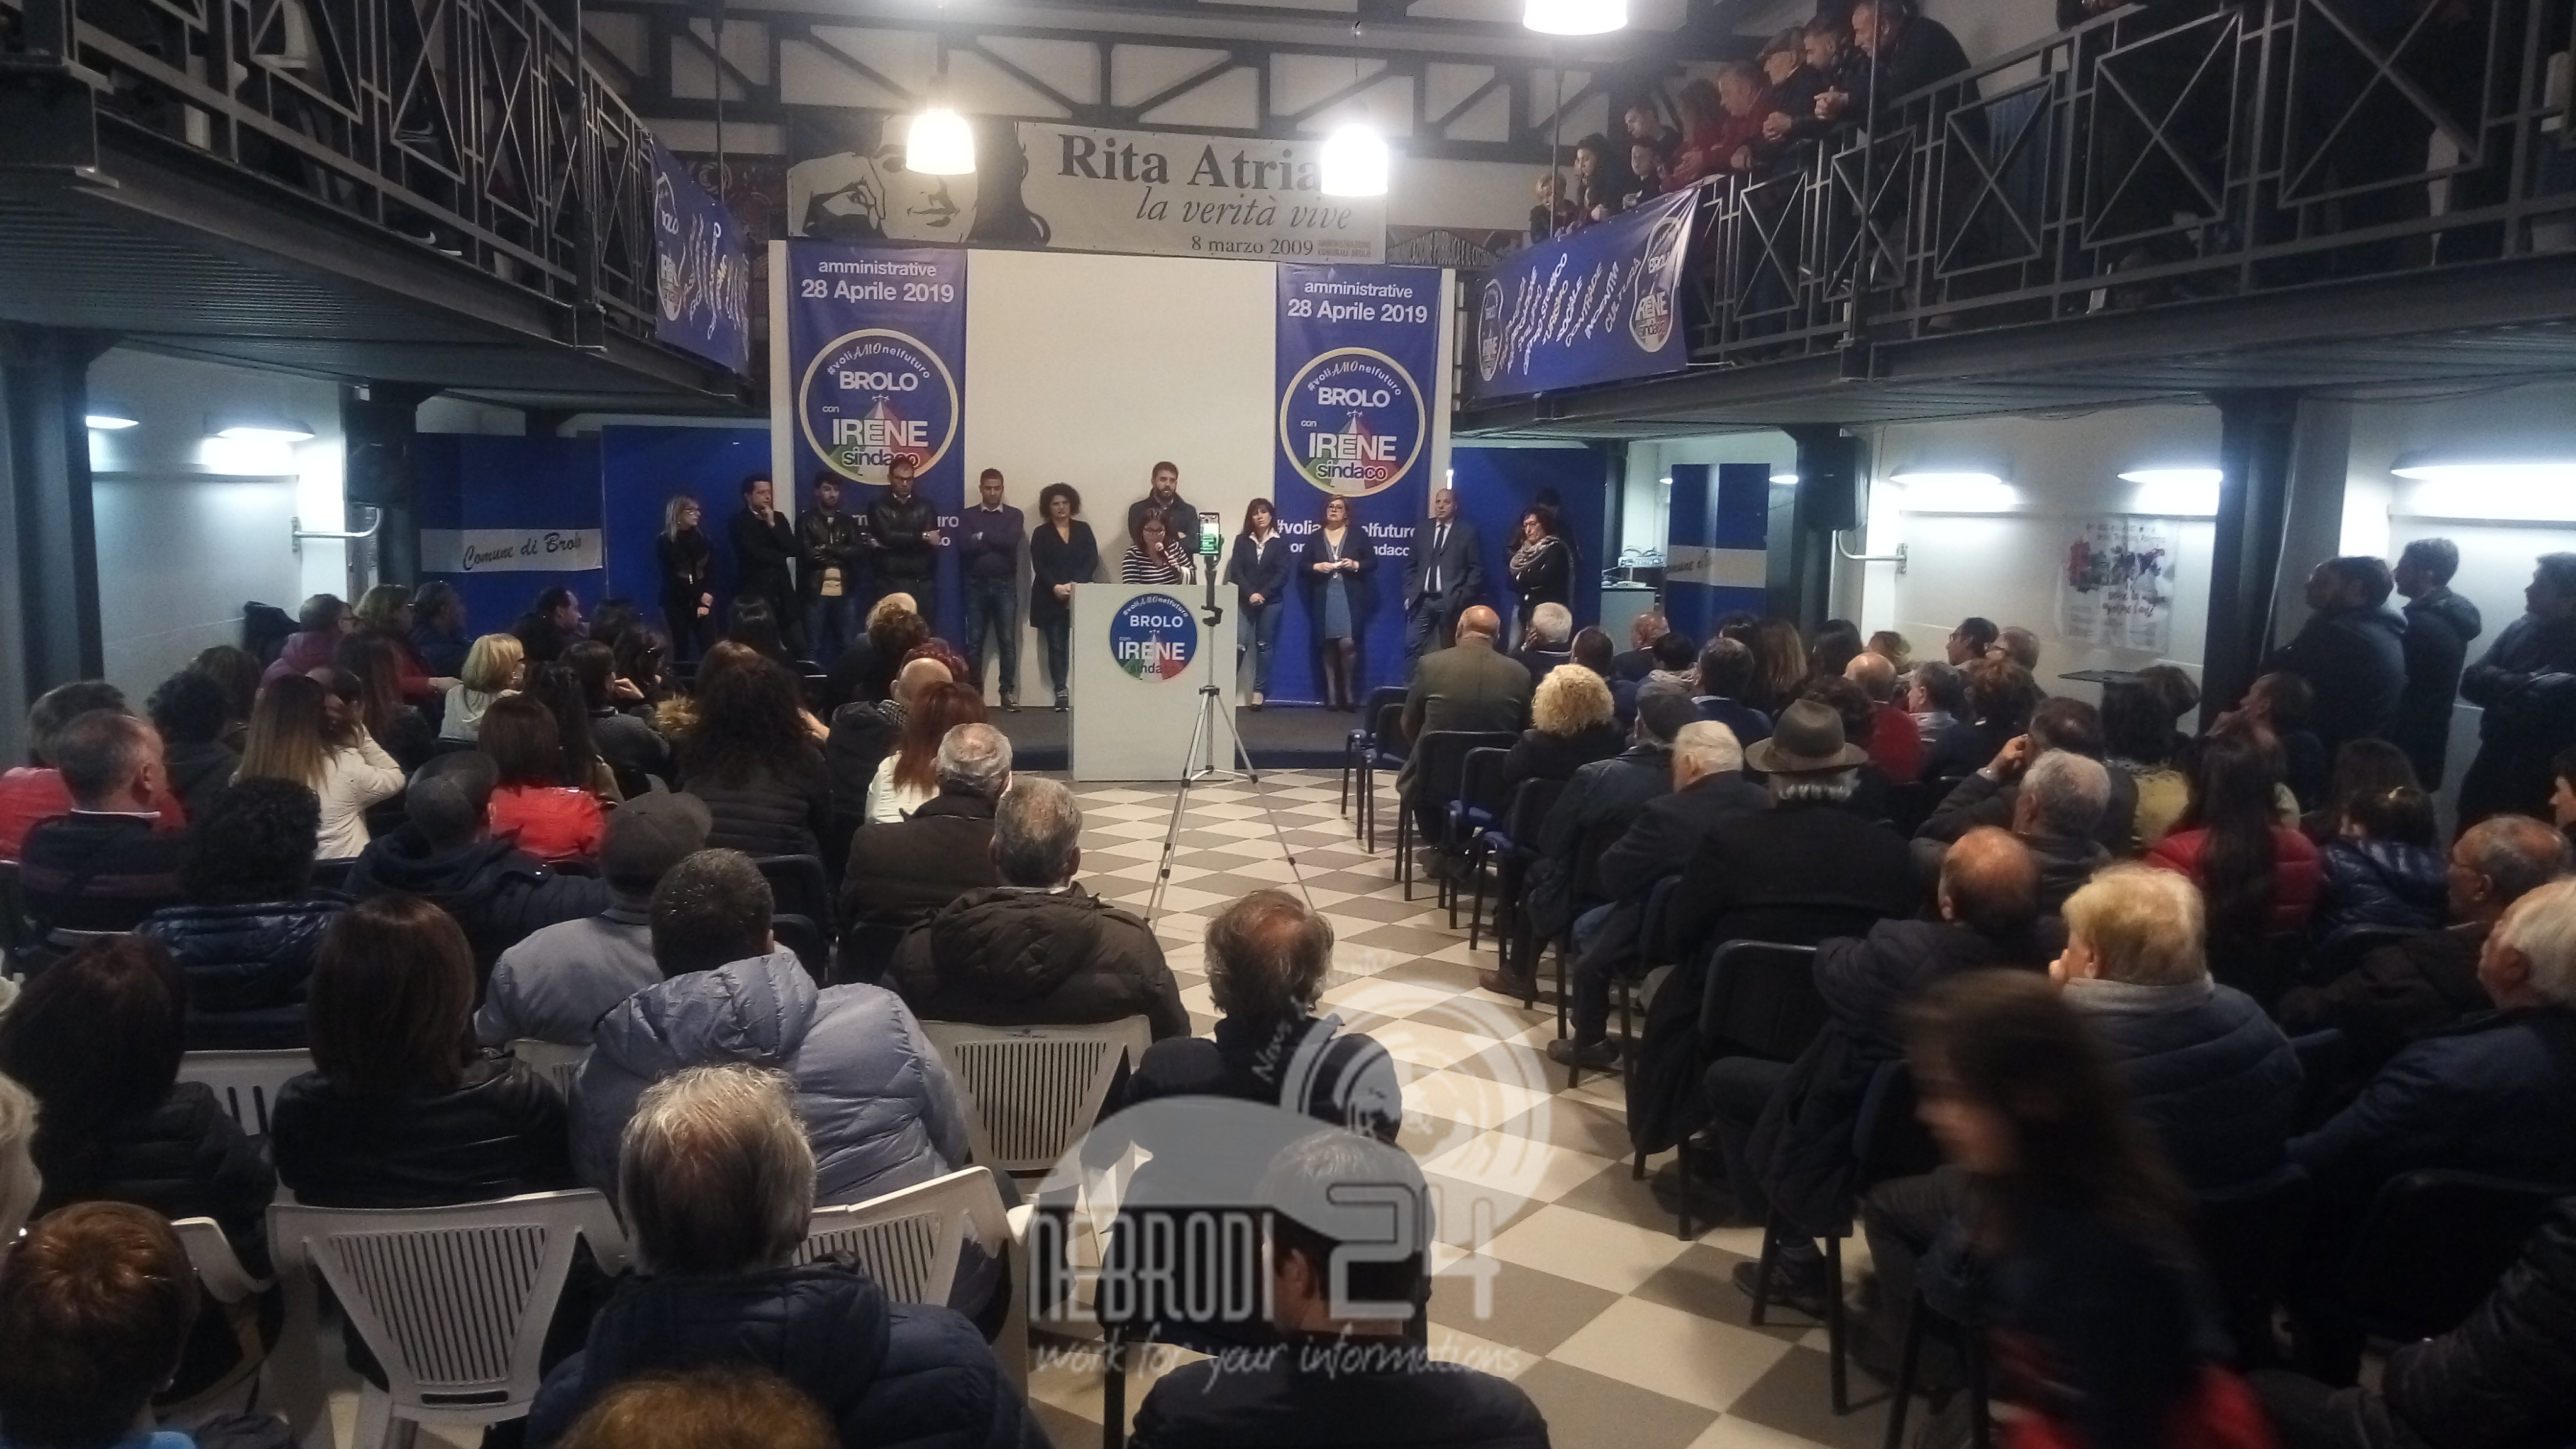 Brolo – Elezioni 2019: il comizio di Irene Ricciardello alla Sala Rita Atria (video)